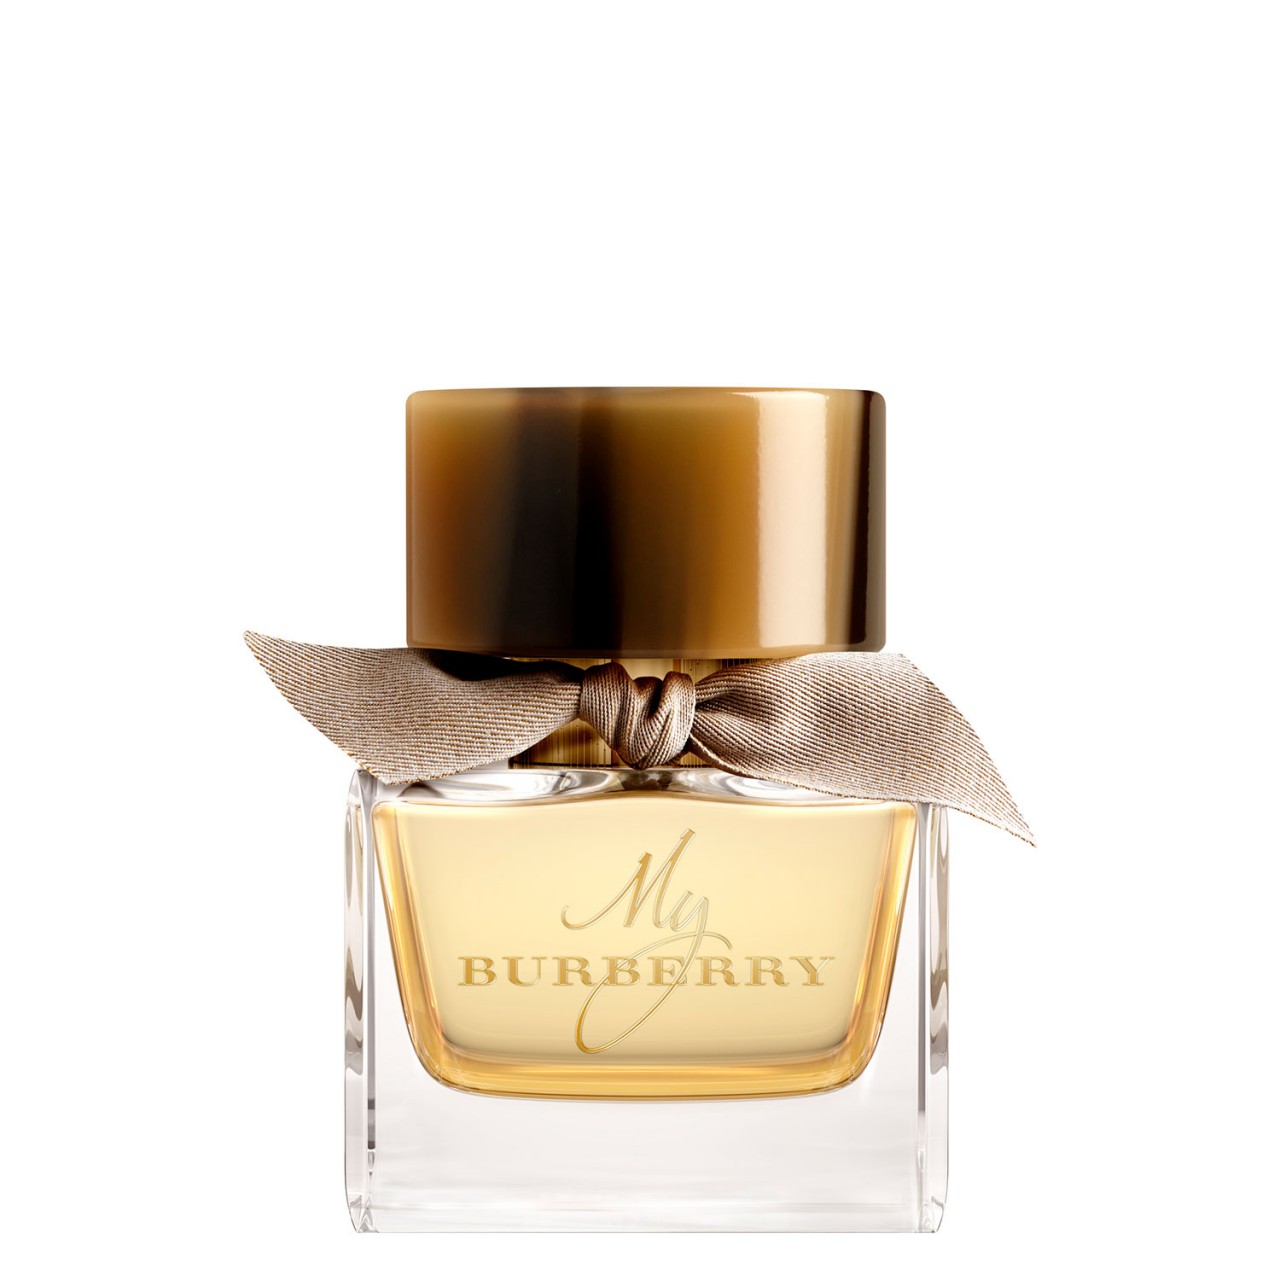 My Burberry - Eau de Parfum von Burberry